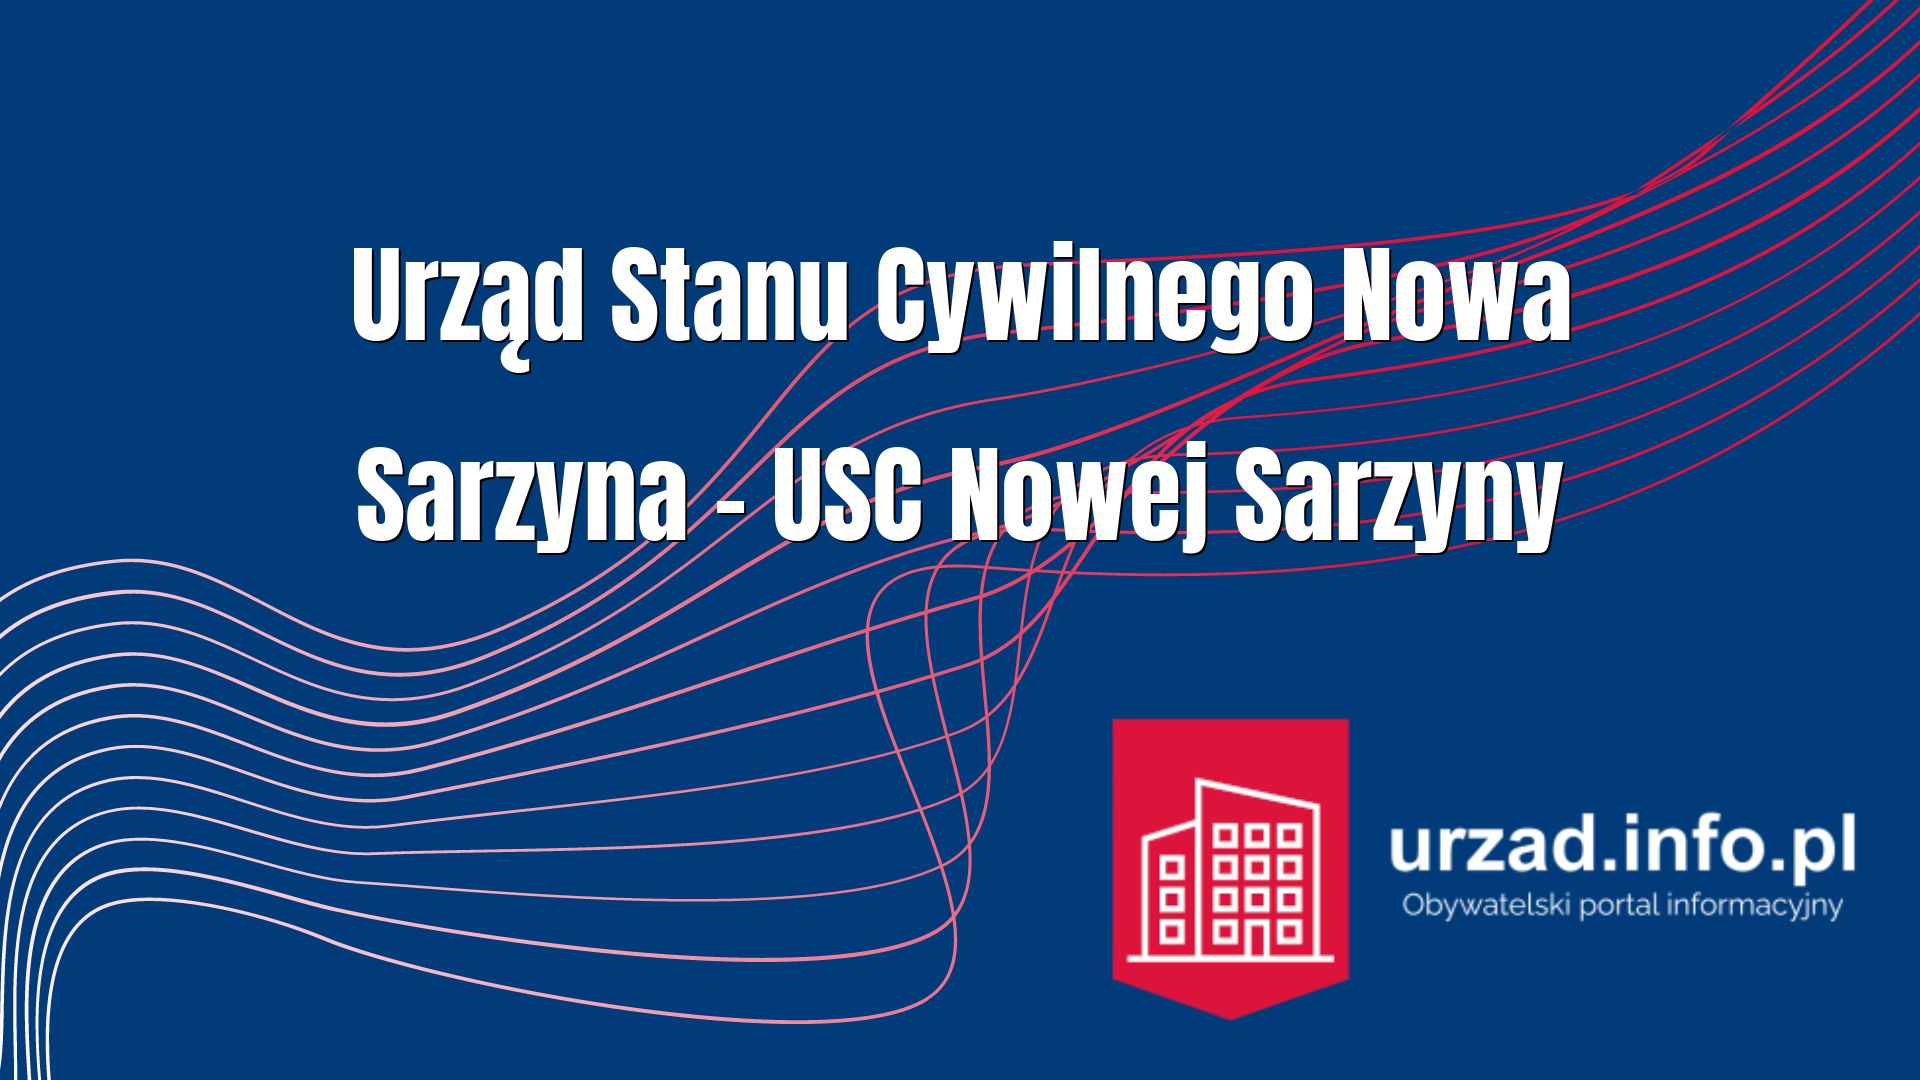 Urząd Stanu Cywilnego Nowa Sarzyna – USC Nowej Sarzyny